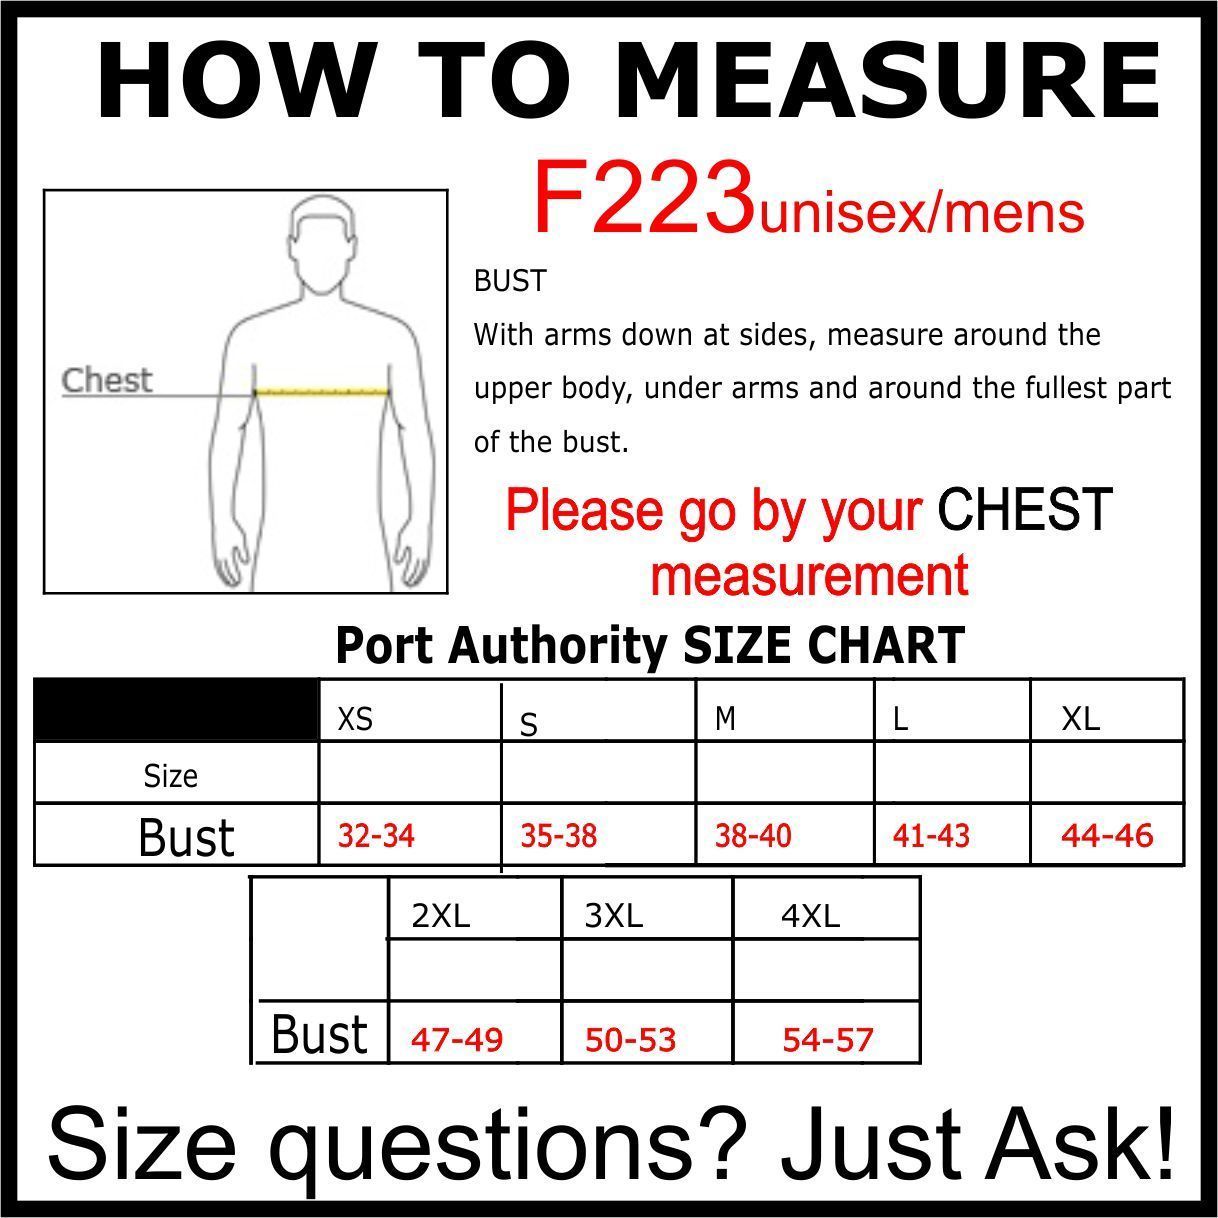 Port Authority Jacket Size Chart